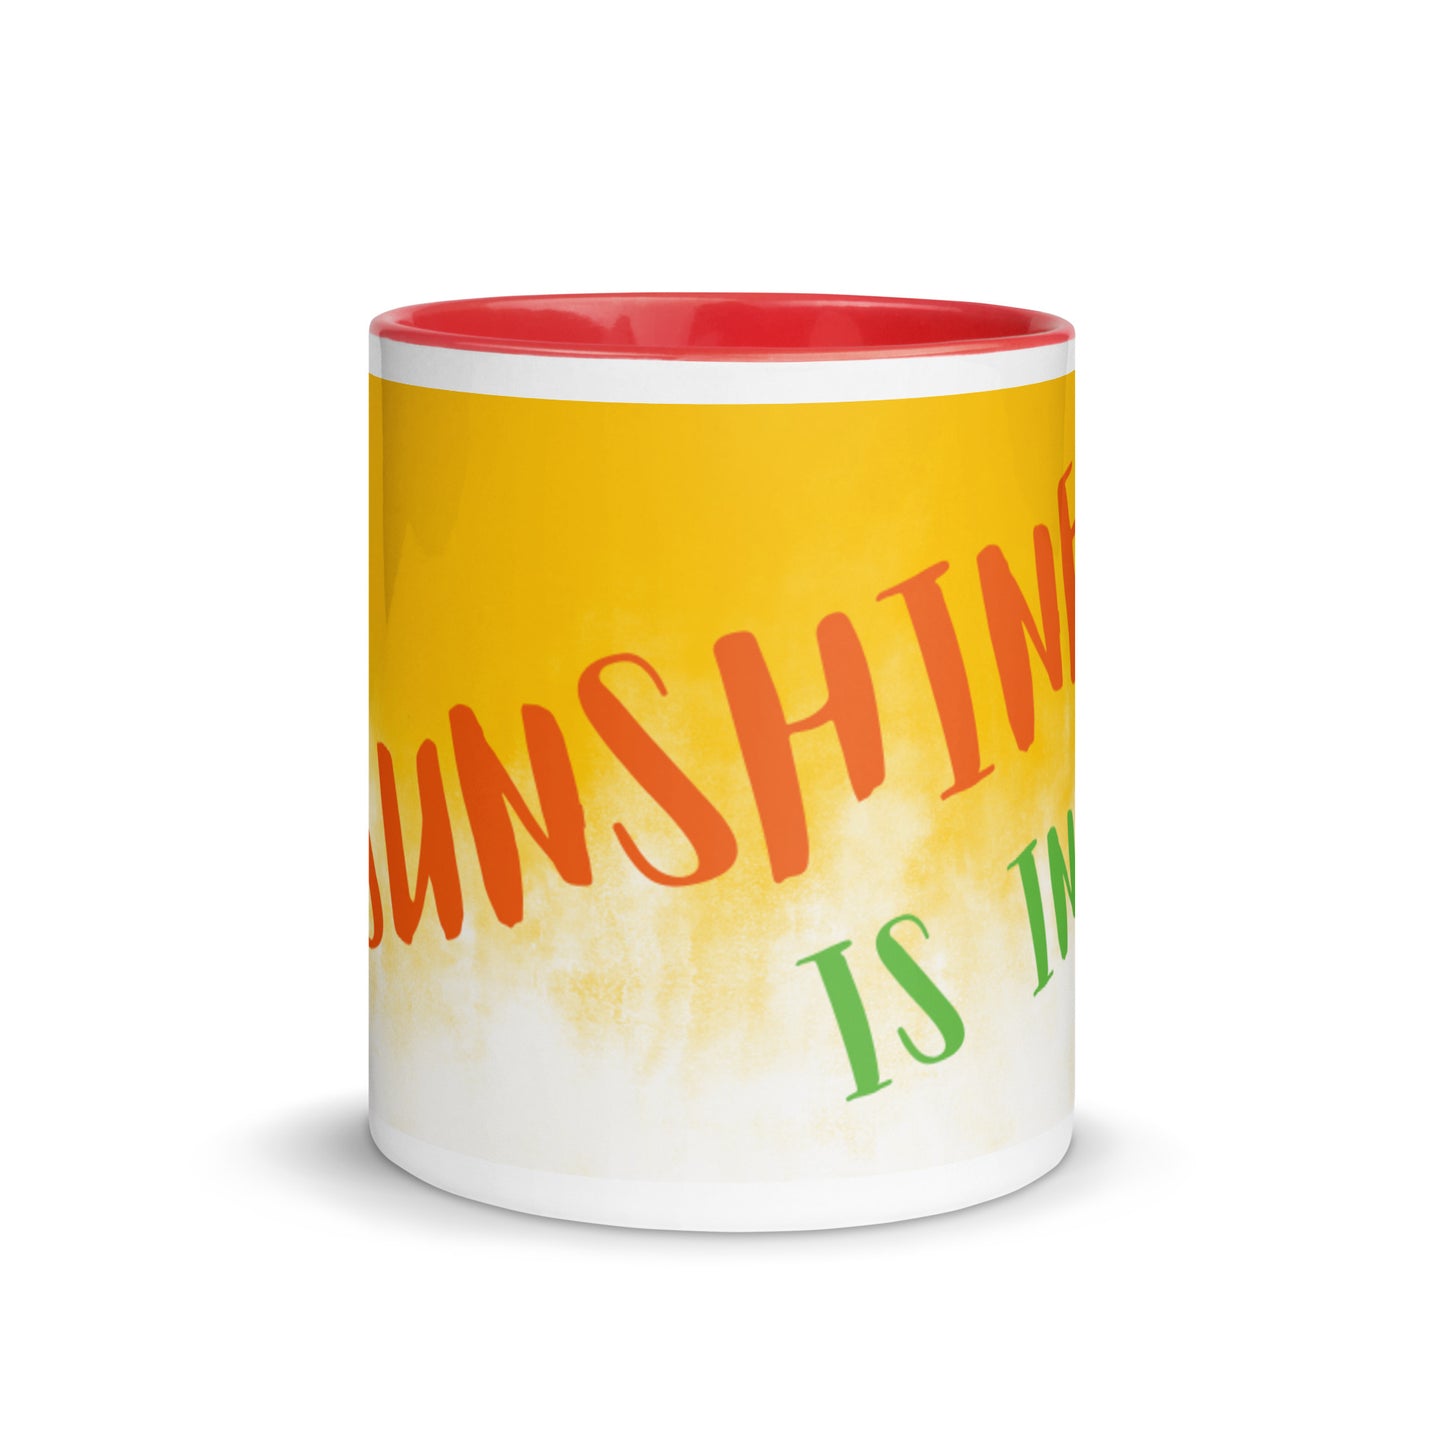 Mug couleur Sunny Day - Le soleil est en moi